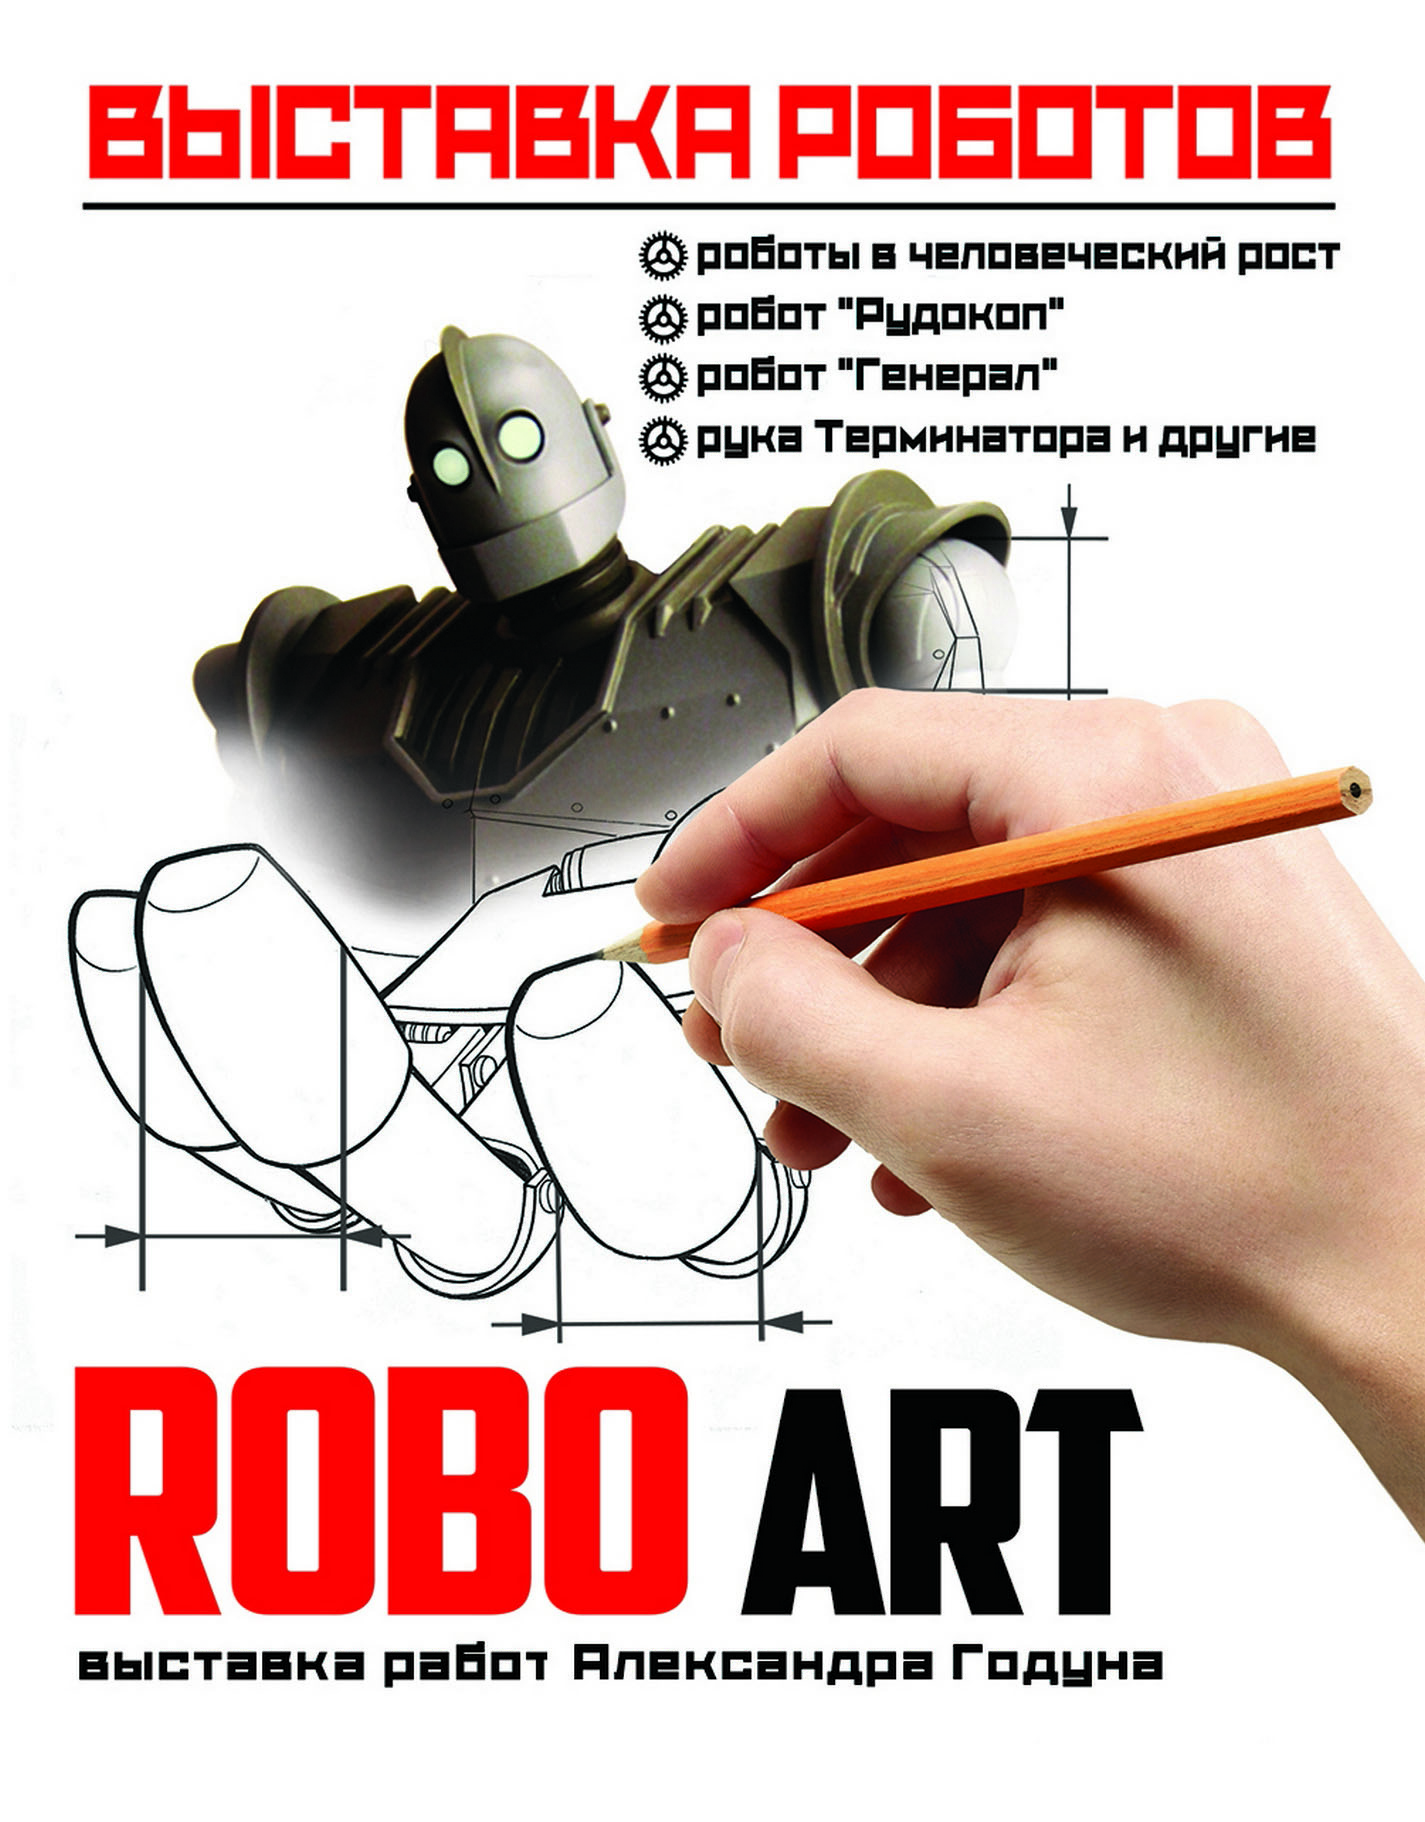 ROBO-ART